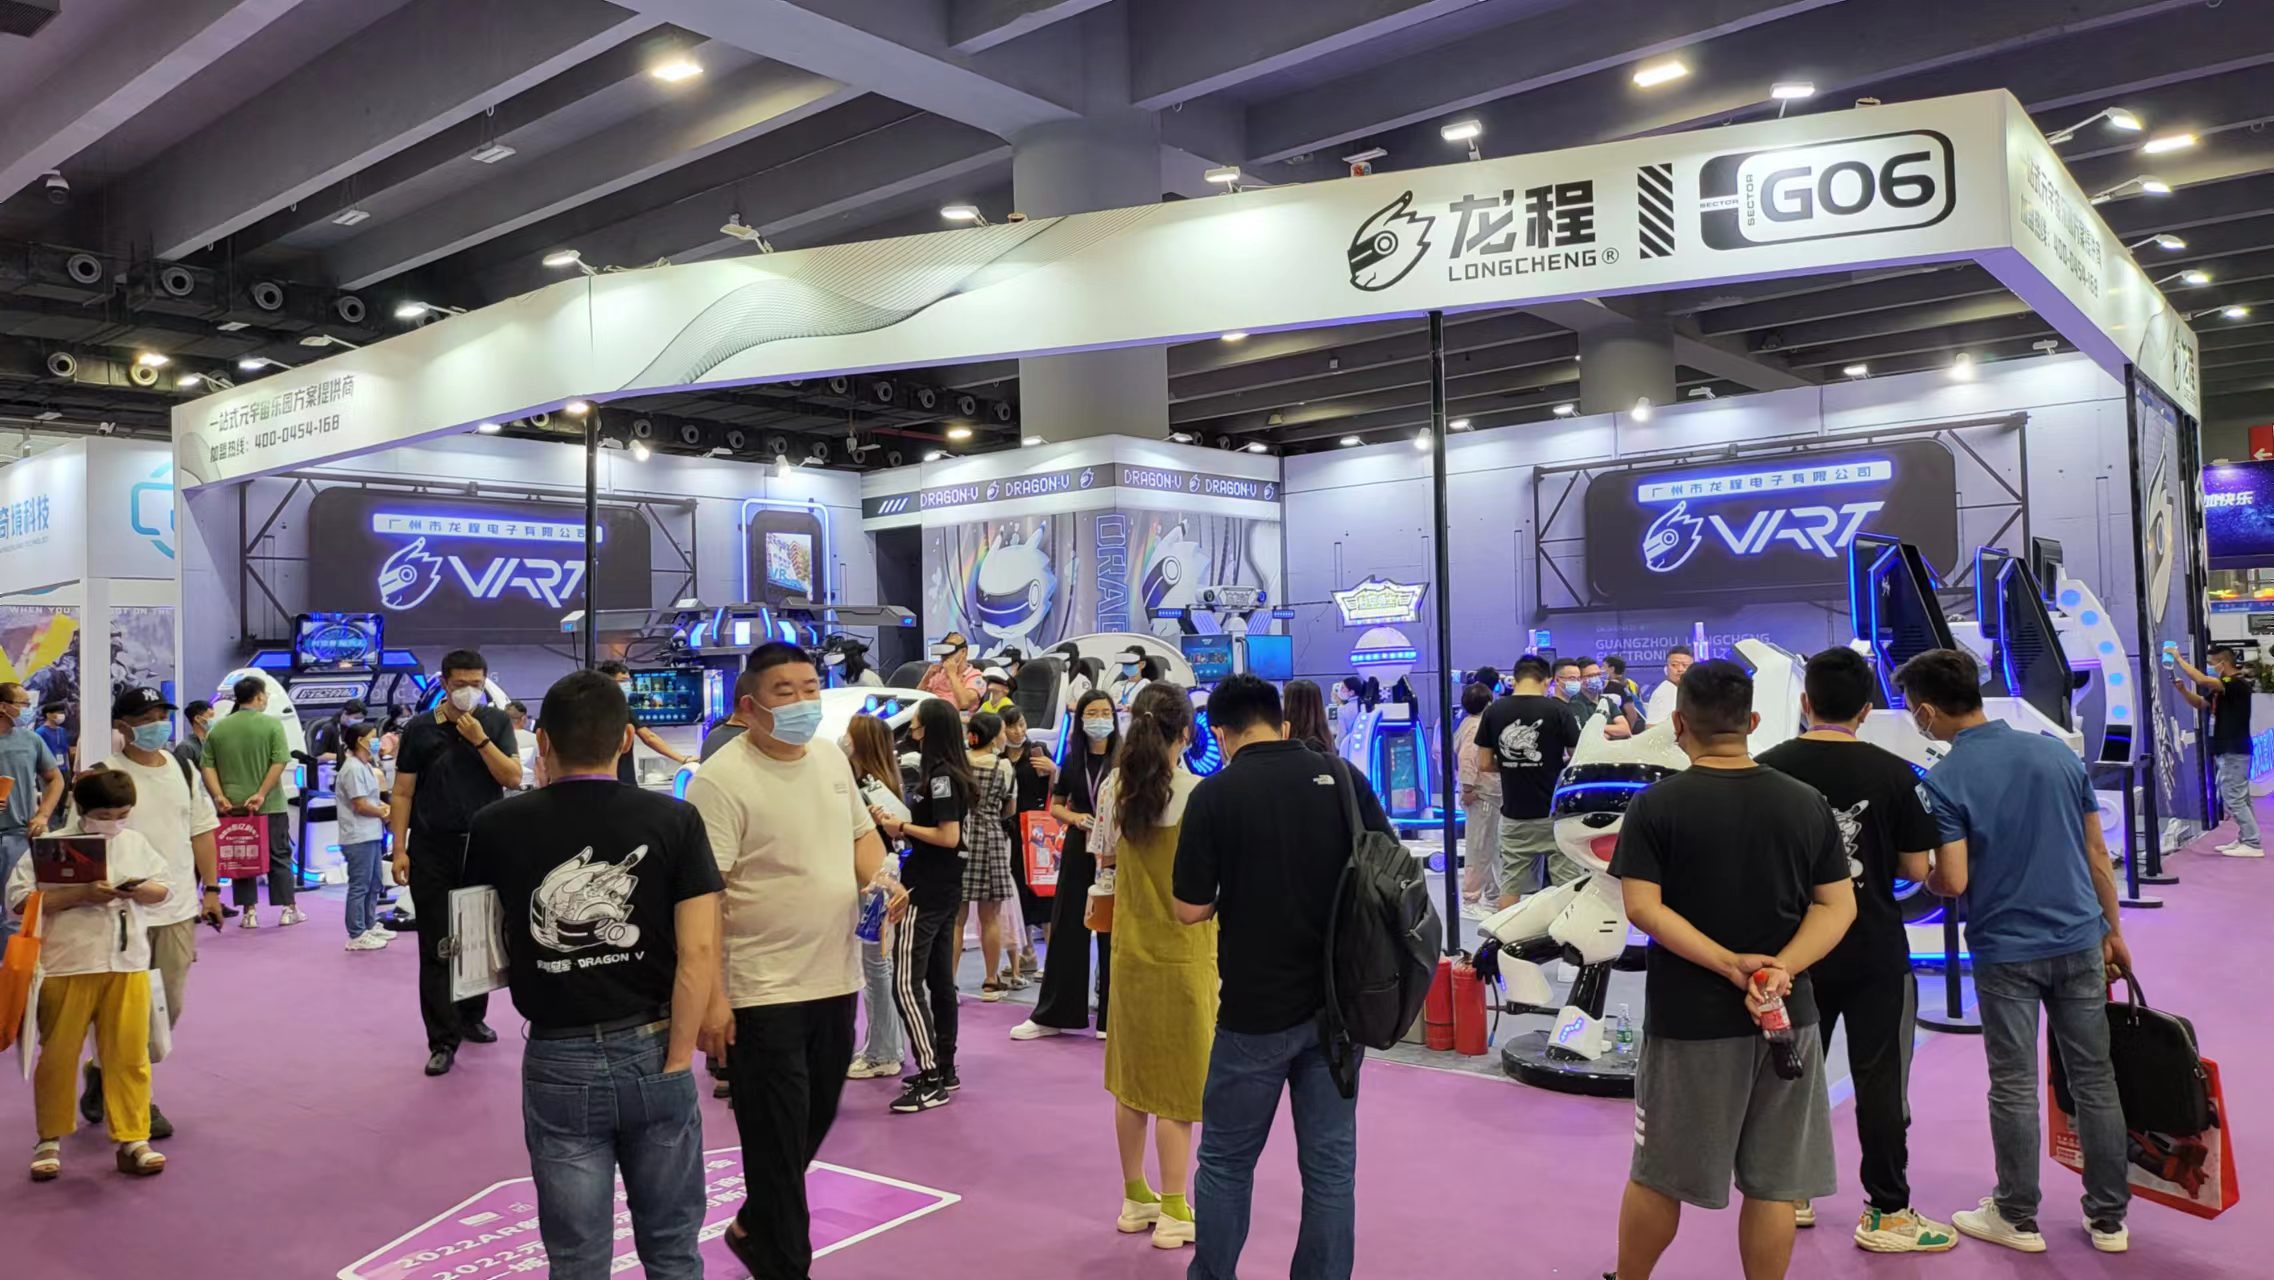 VART VR |Guangzhou Metaverse Exhibition Booth G06 သည် အမှန်တကယ် လူကြိုက်များသည်။